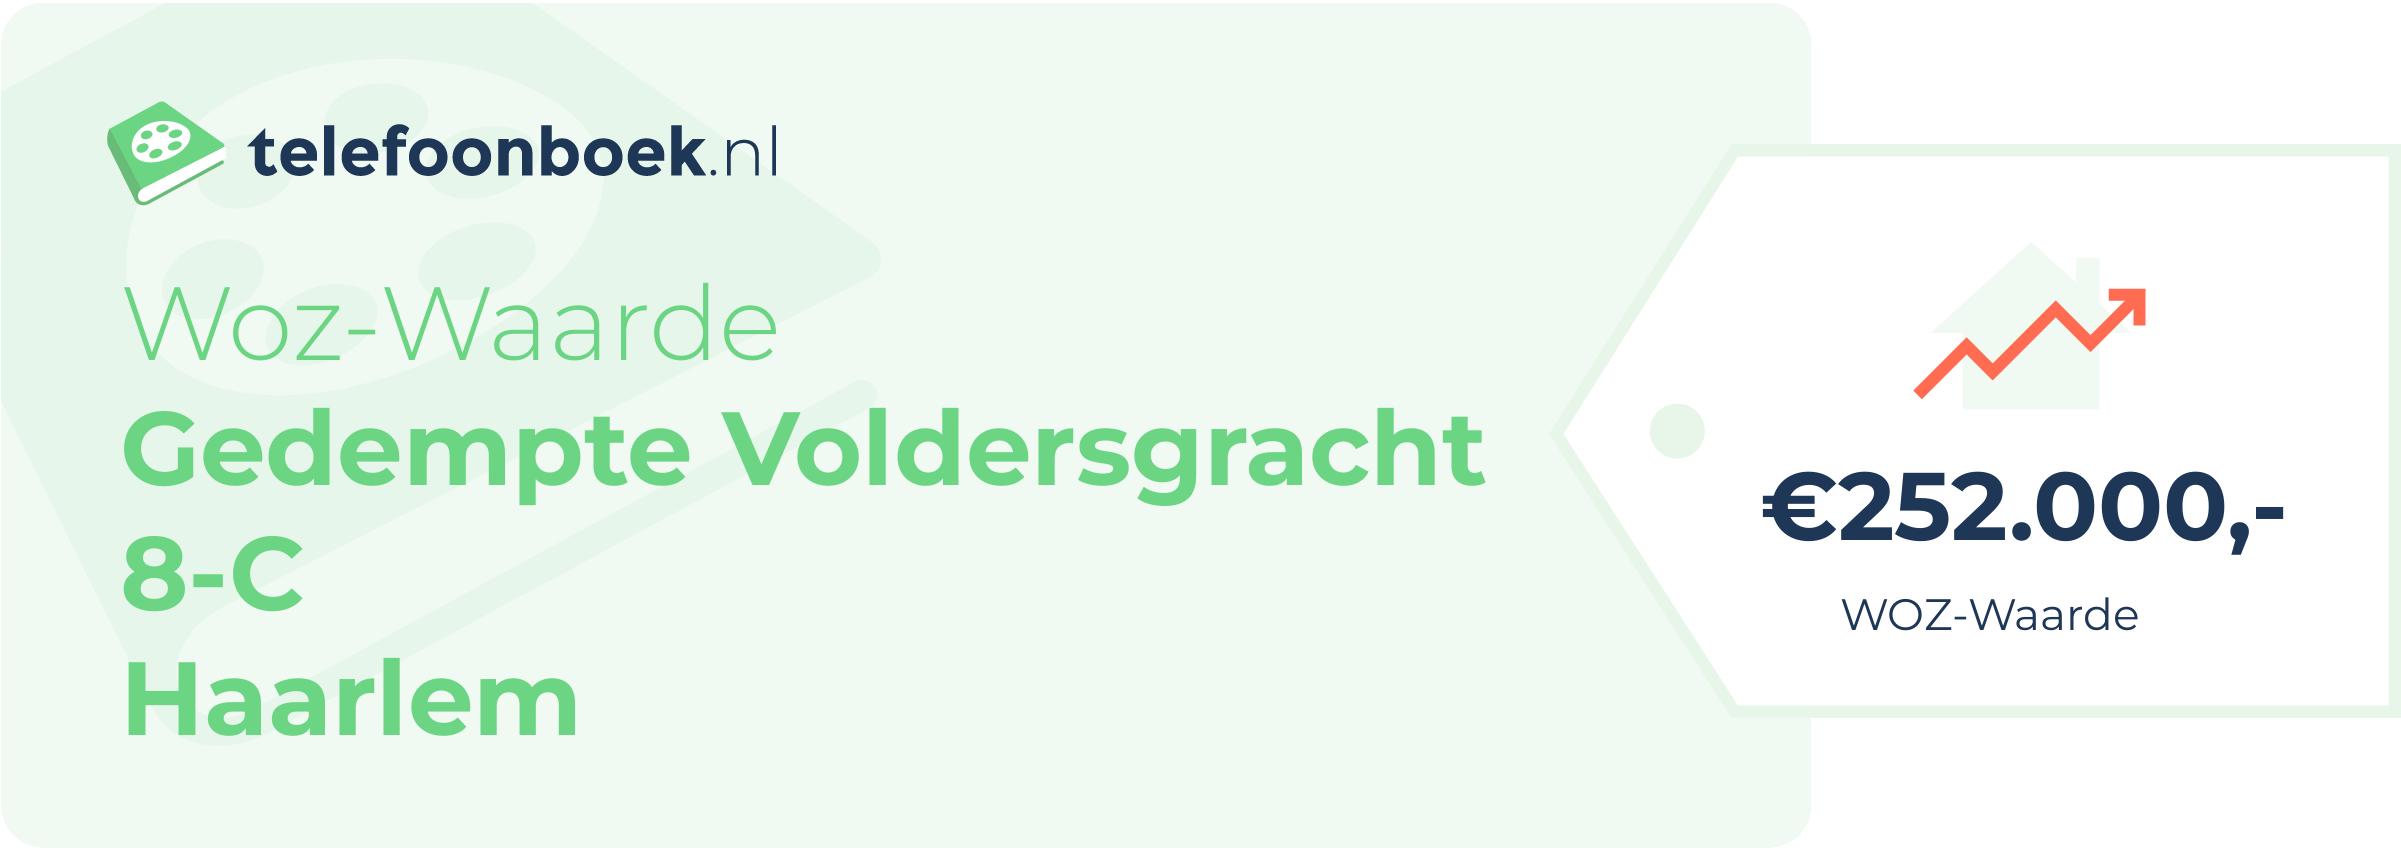 WOZ-waarde Gedempte Voldersgracht 8-C Haarlem